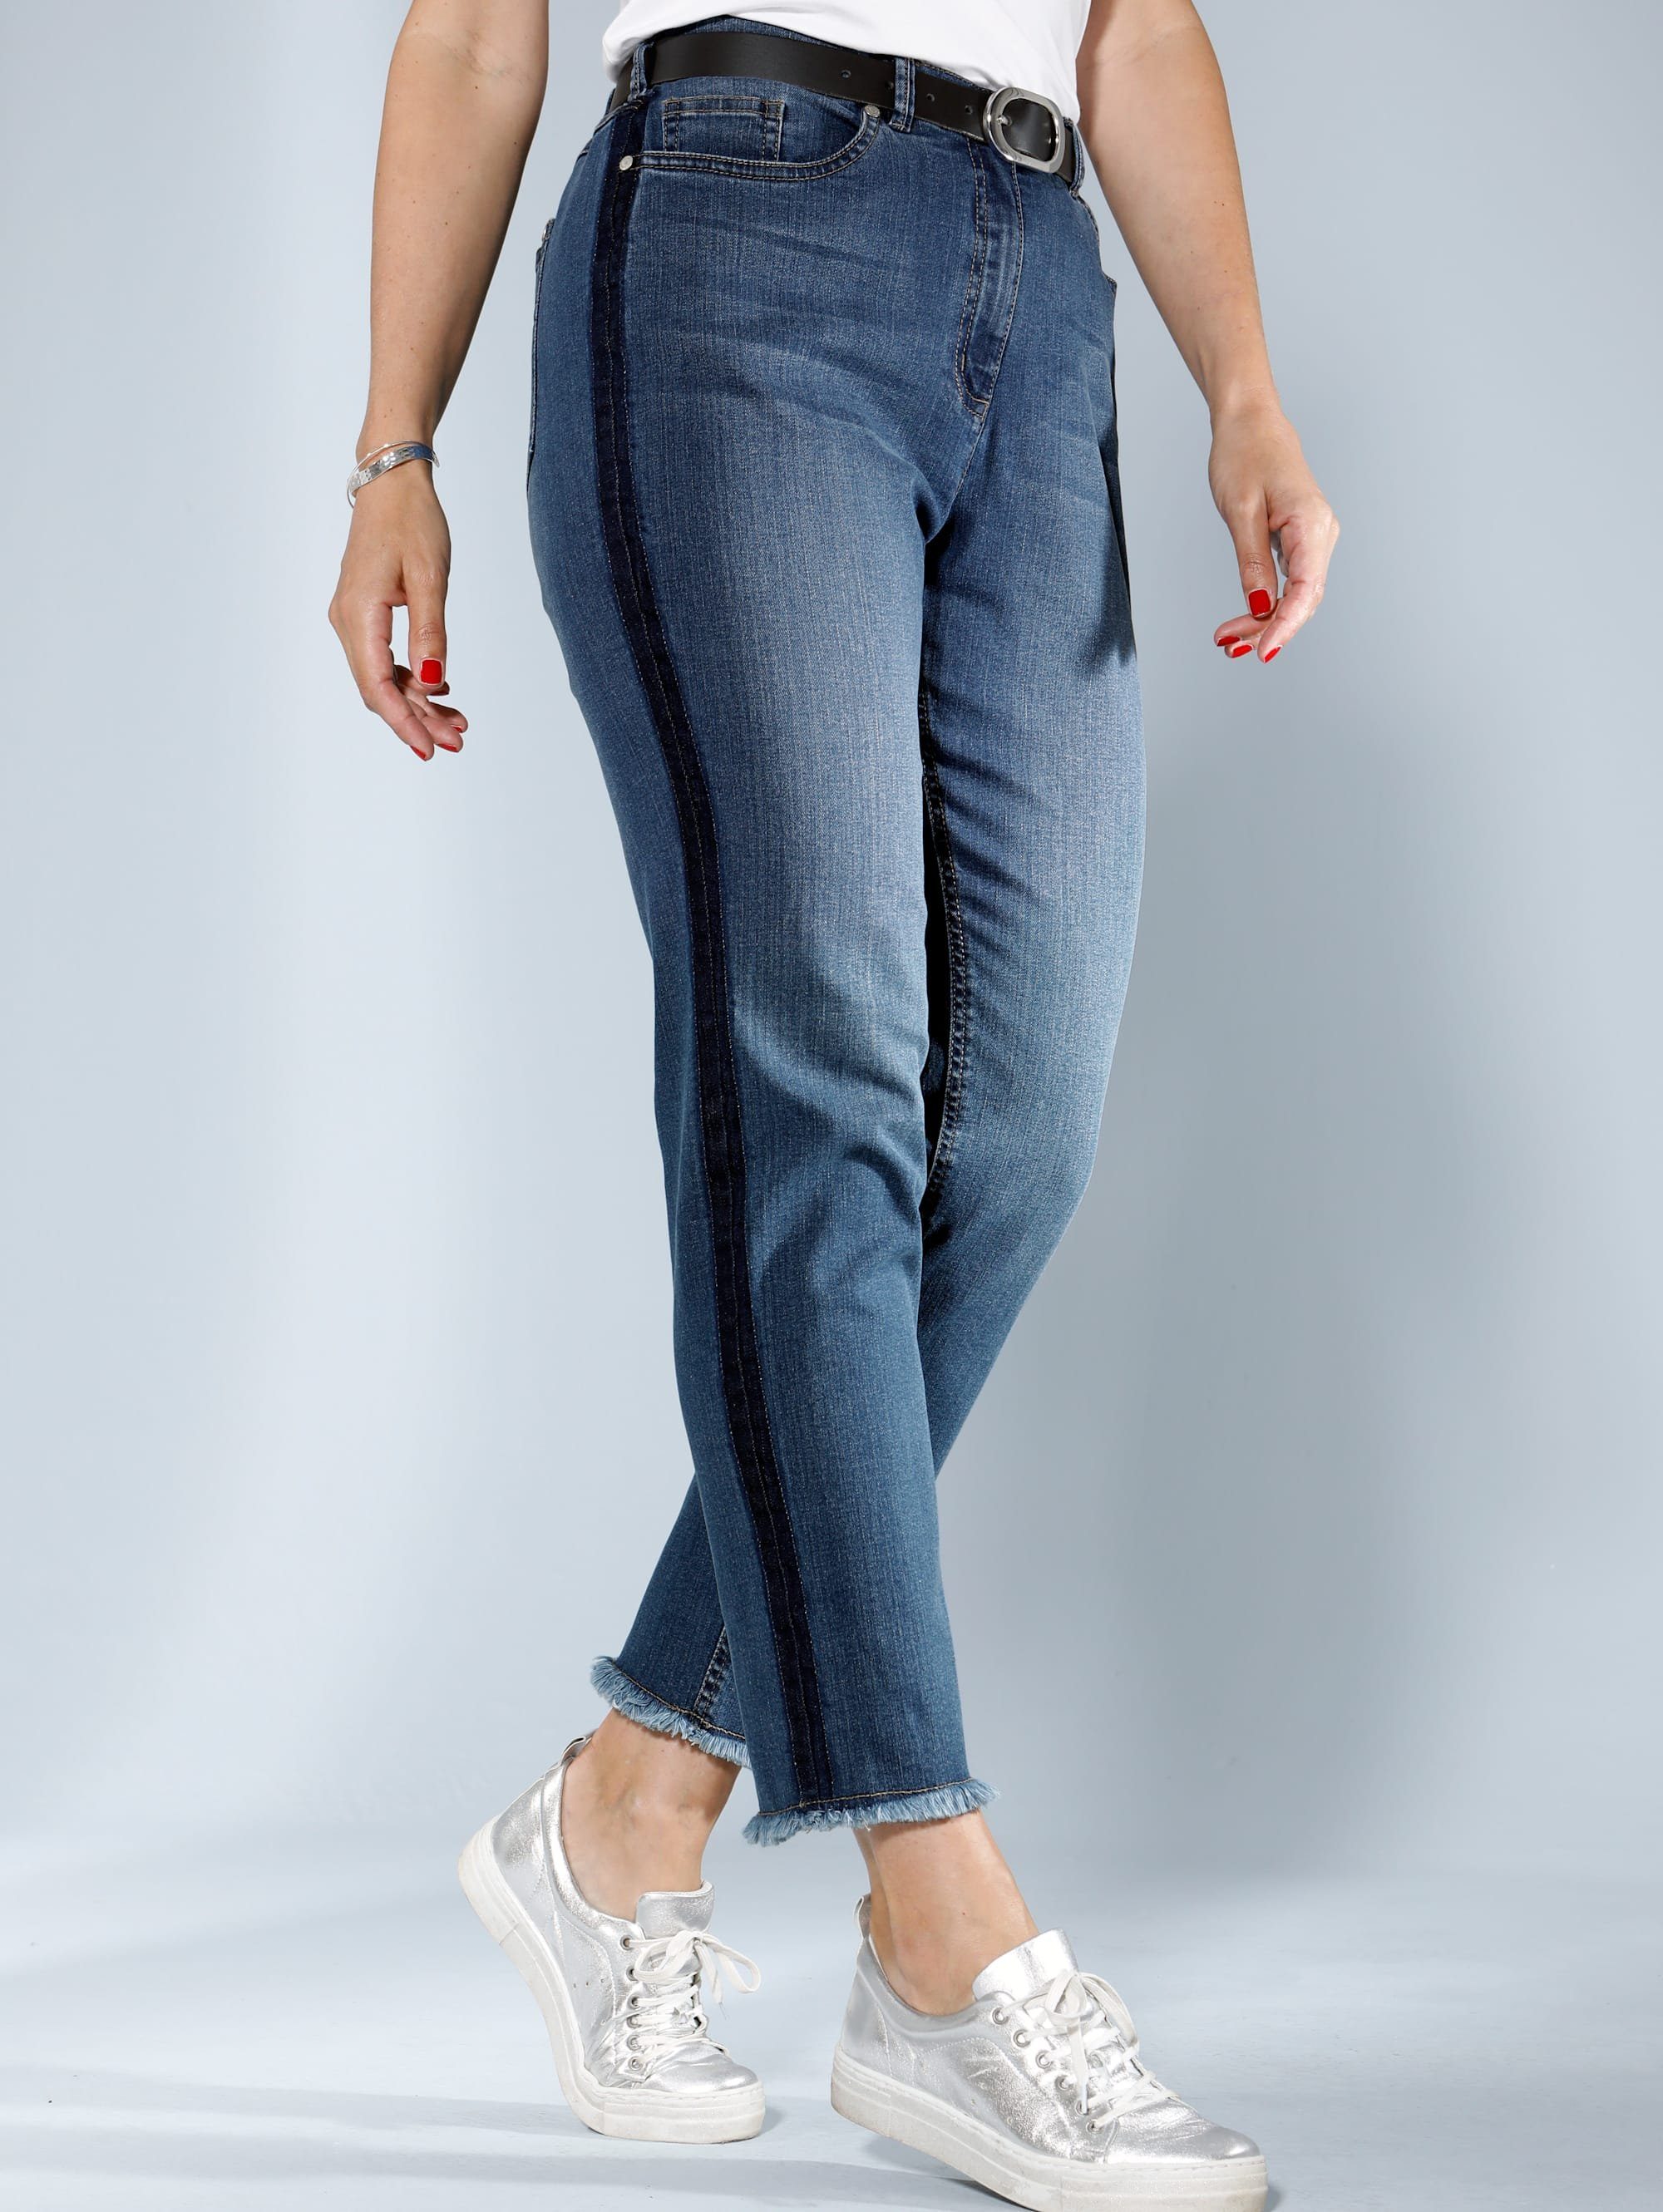 MIAMODA Jeans mit Fransen am Saum, Seitlich am Bein mit aufgedrucktem  Streifen online kaufen | OTTO